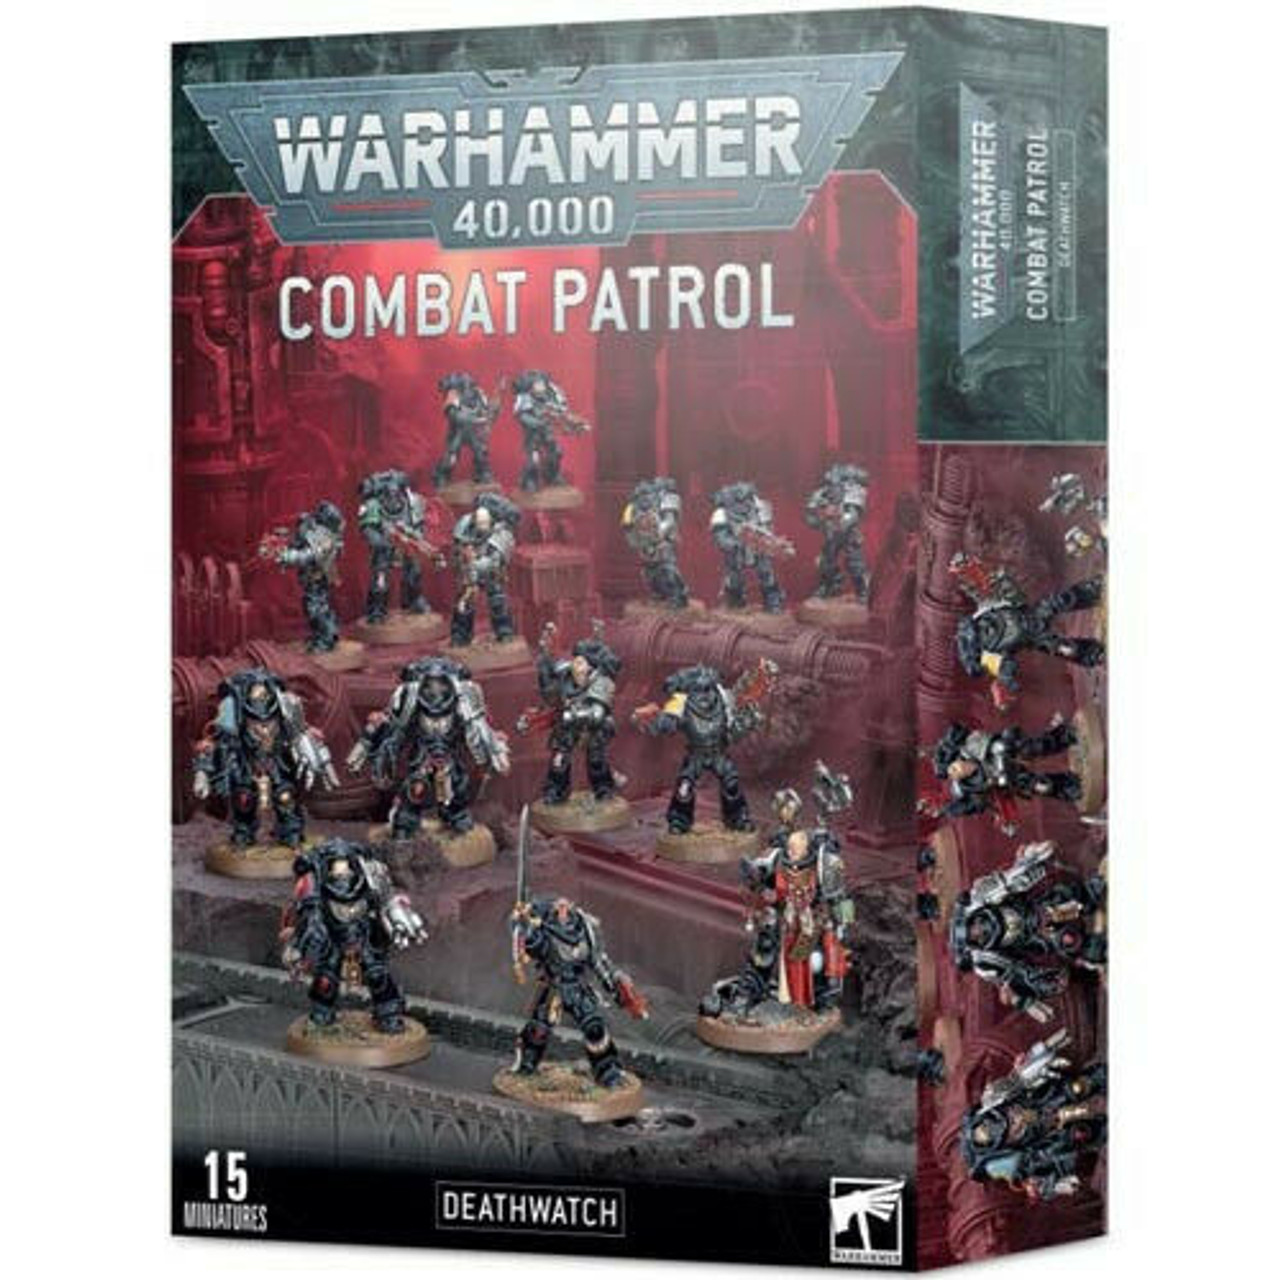 Warhammer 40K: Combat Patrol - Deathwatch. -=NEW=-